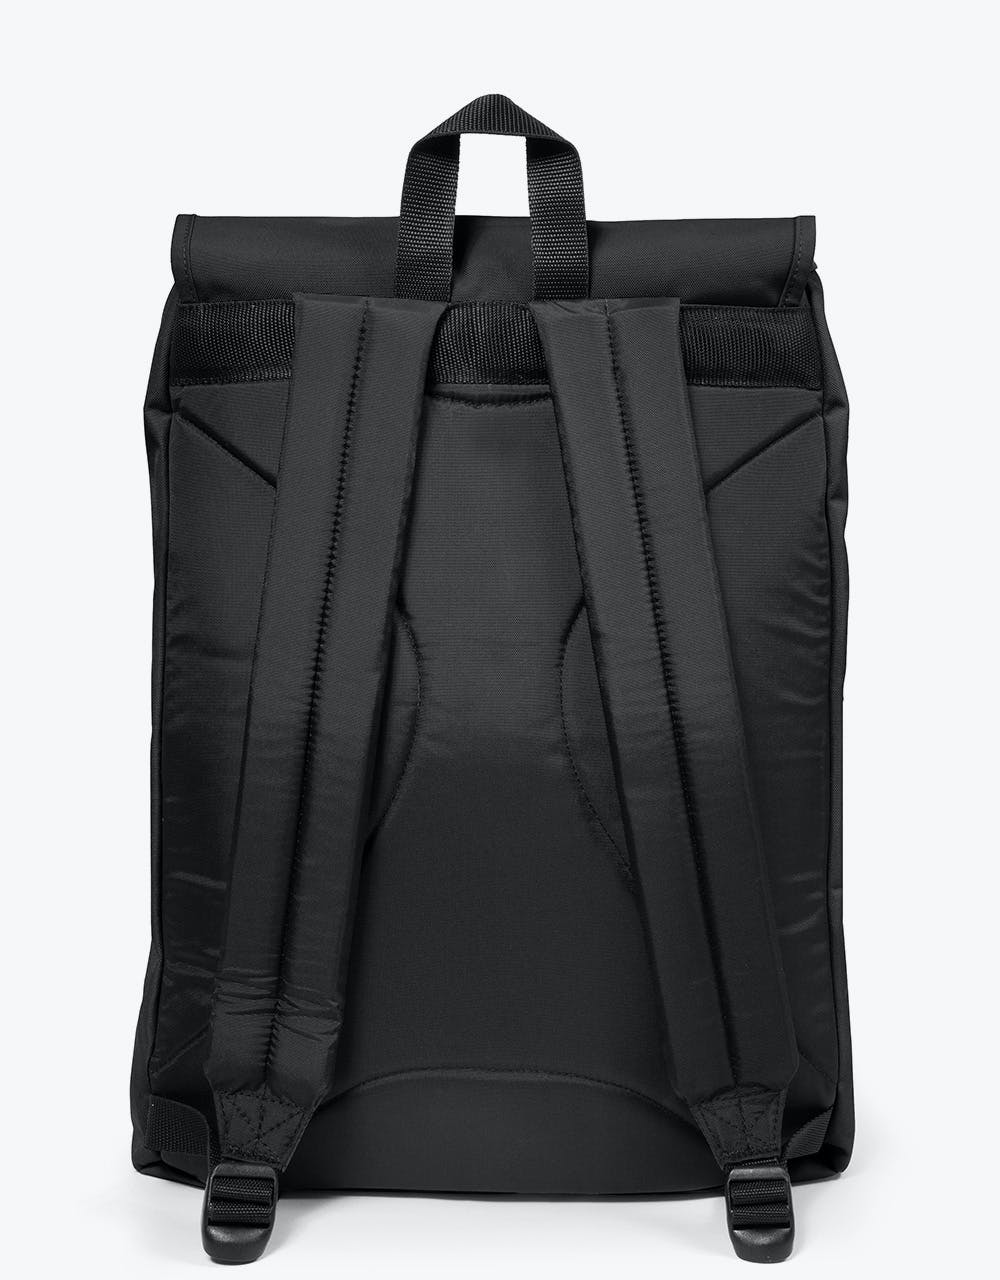 Eastpak London Backpack - Black